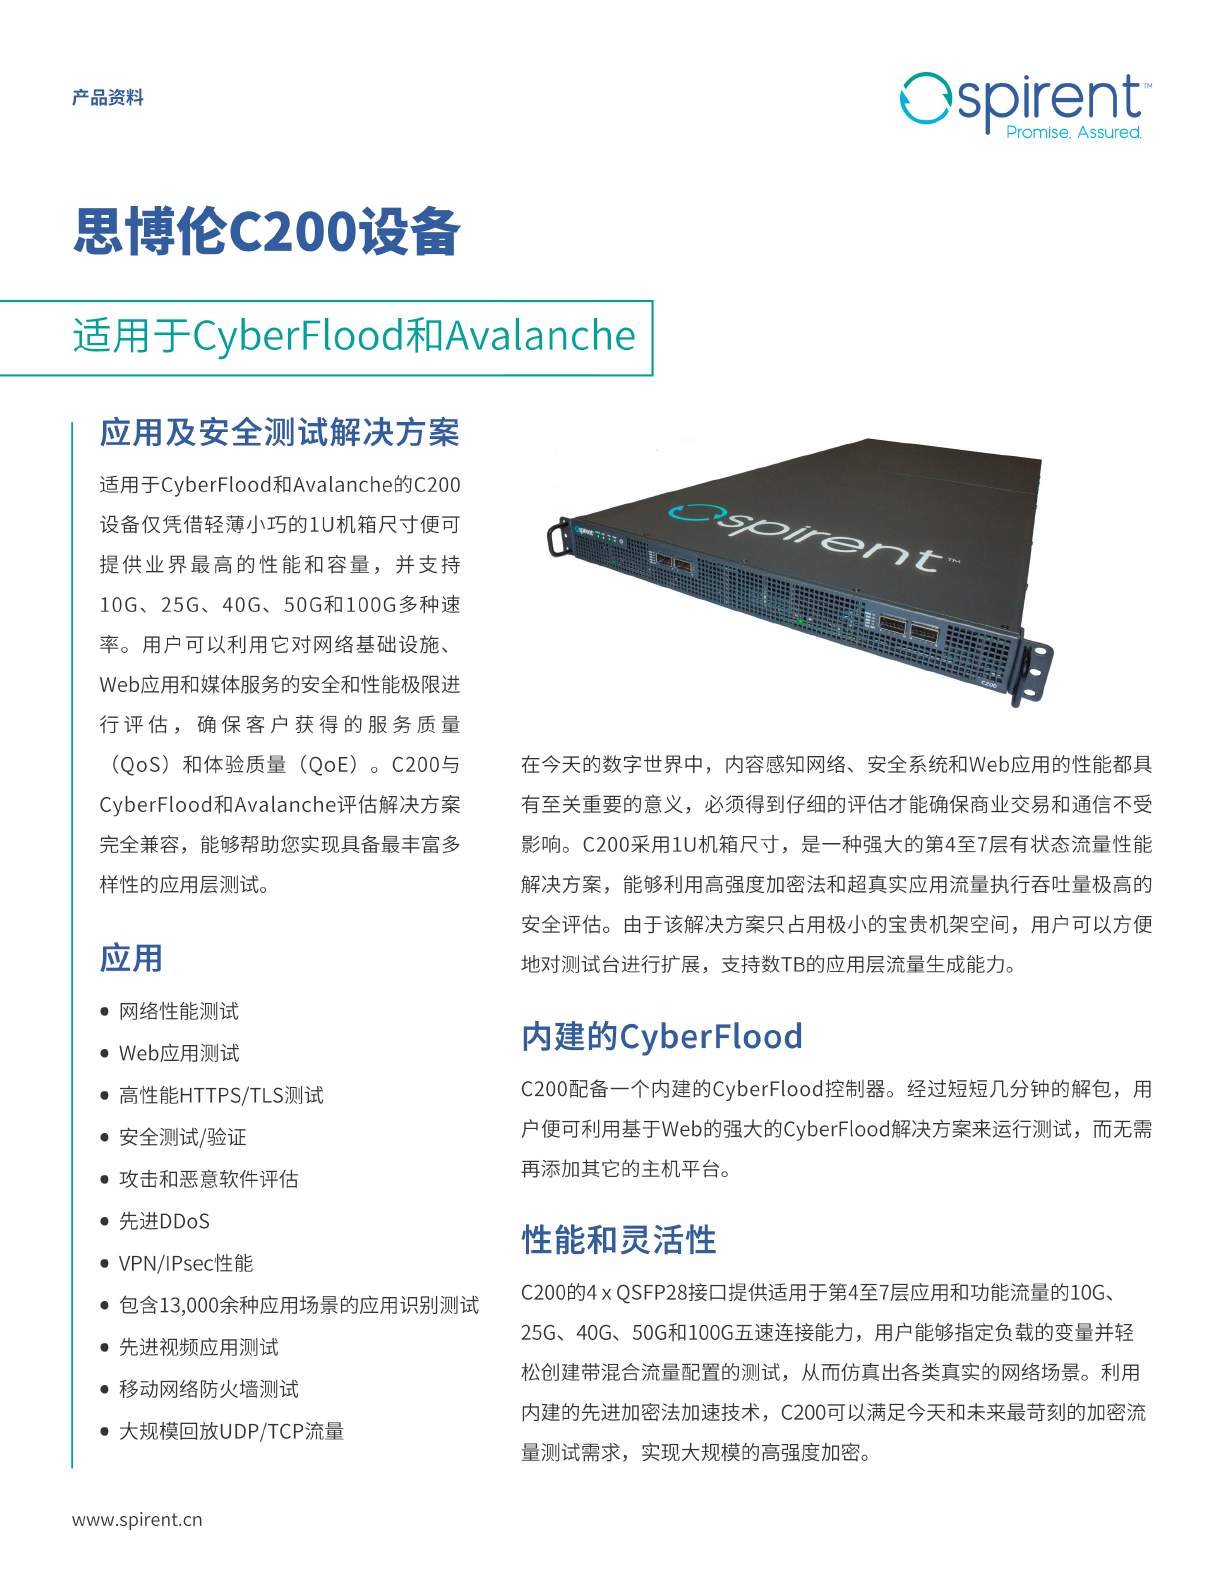 最新版本-C200Appliance_RevA_EN_201911-中文_页面_1.jpg